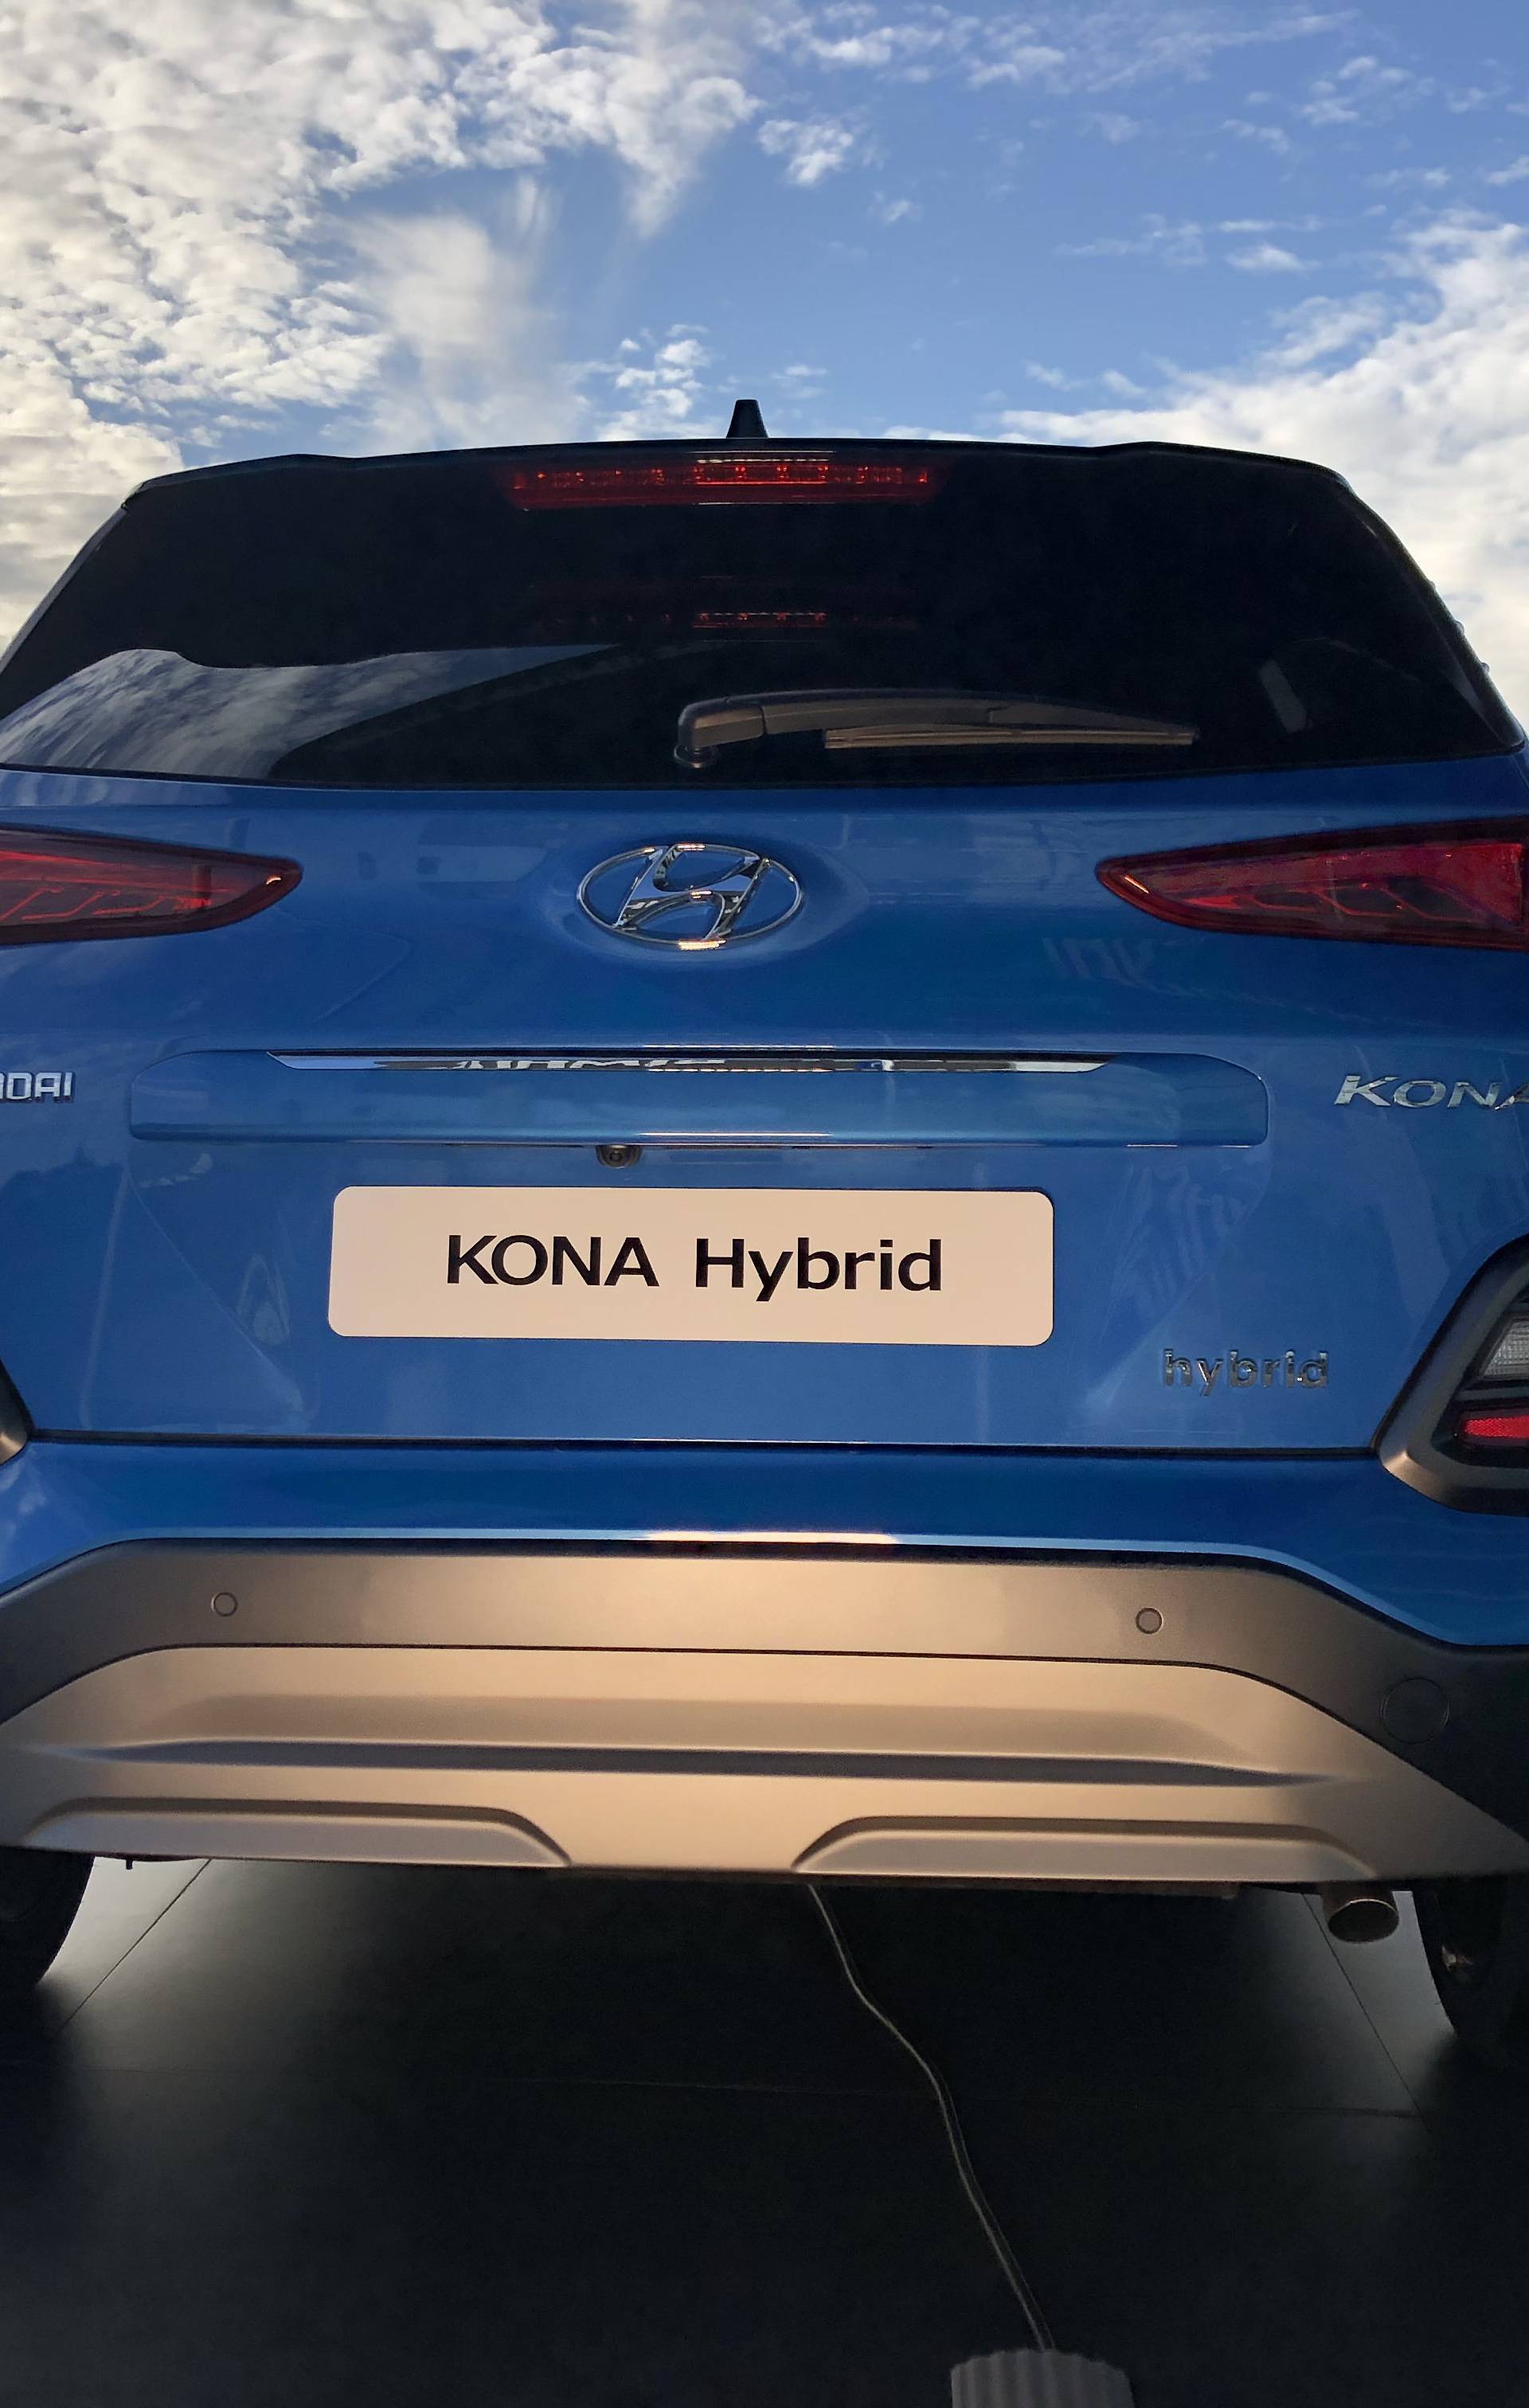 Hyundai s dva nova modela kreće u veliki električni napad